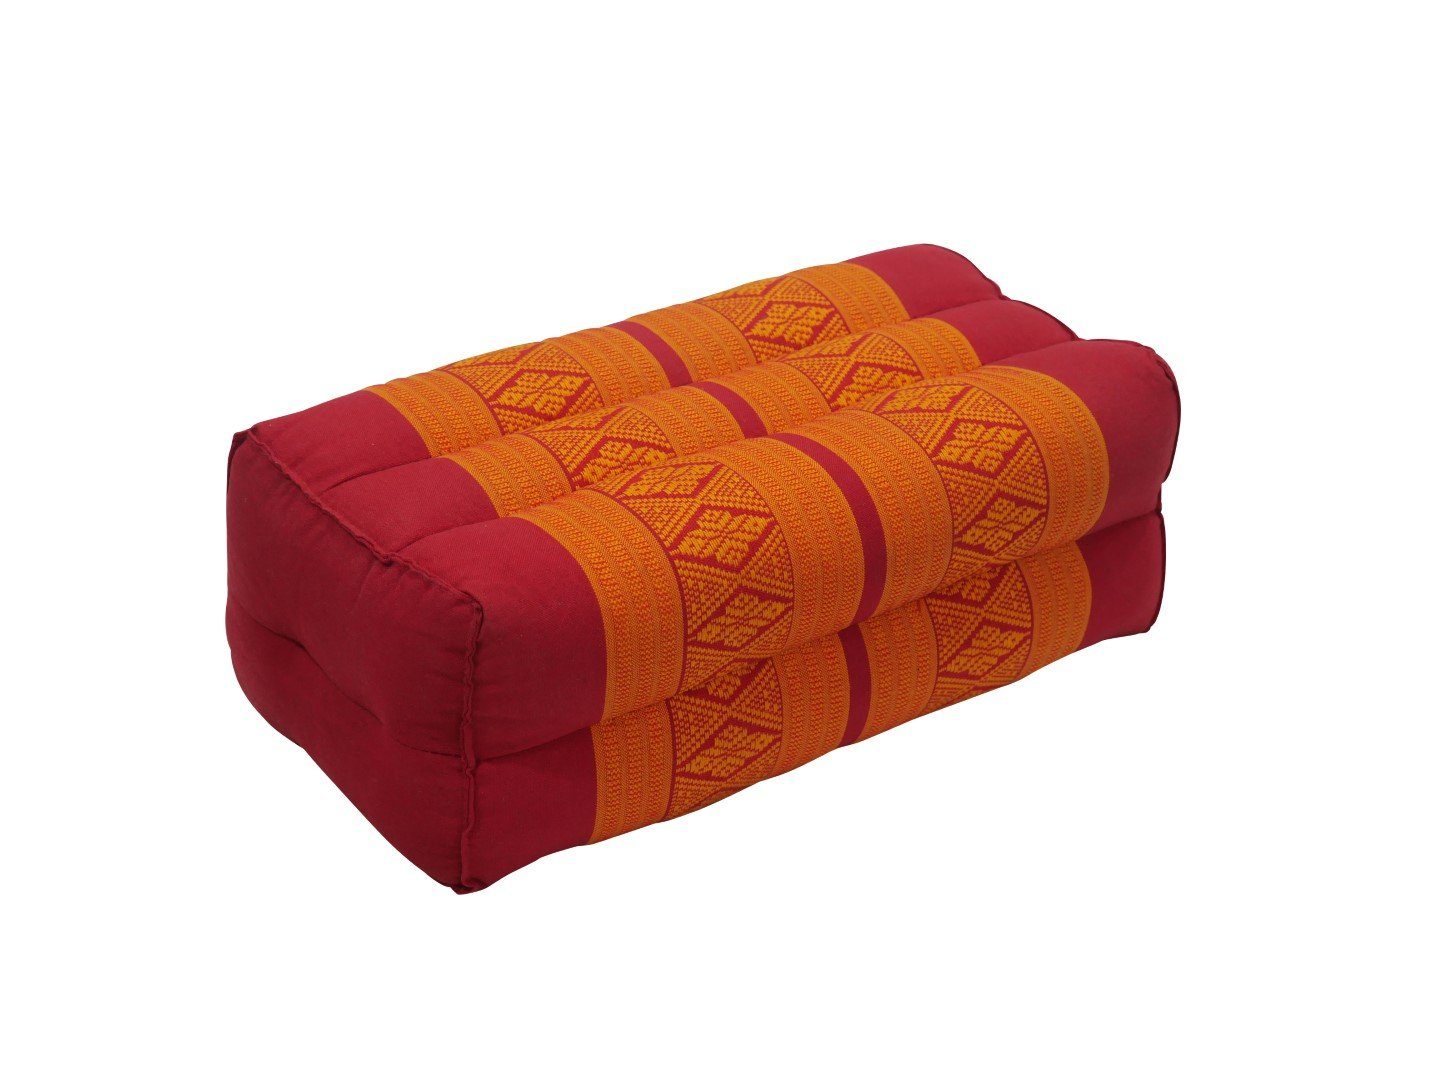 Muster orientalischem my Thaimassage Hamam unterstützend, Kissen, Yogakissen Yoga-Meditationskissen, mit rot-orange